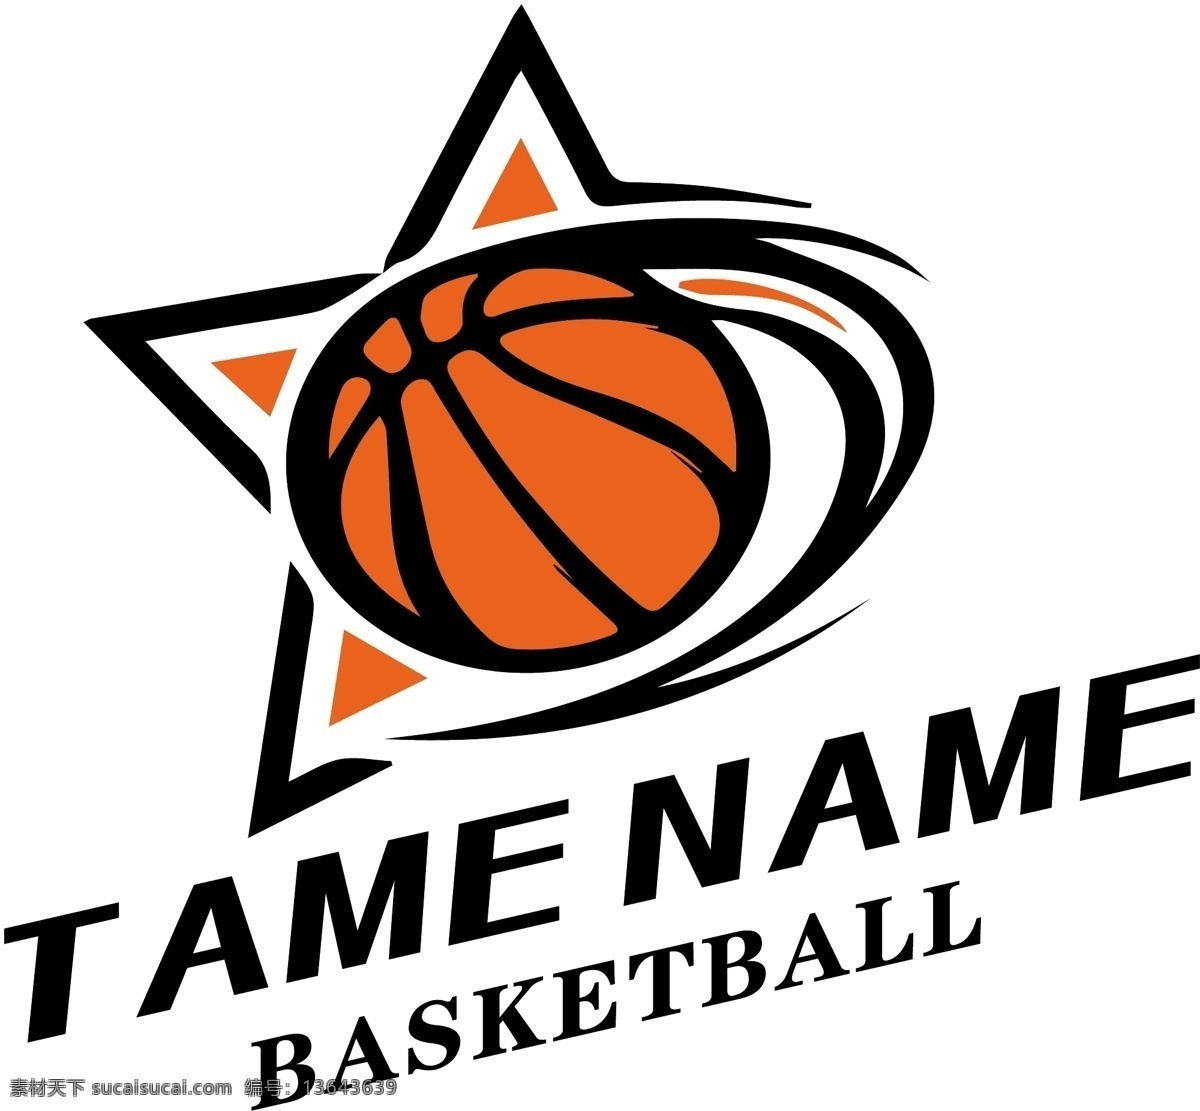 矢量 球队 名 logo 篮球 服 篮球印花 篮球图案 篮球服图案 篮球队队名 篮球队 彩色 basketball 标志图标 其他图标